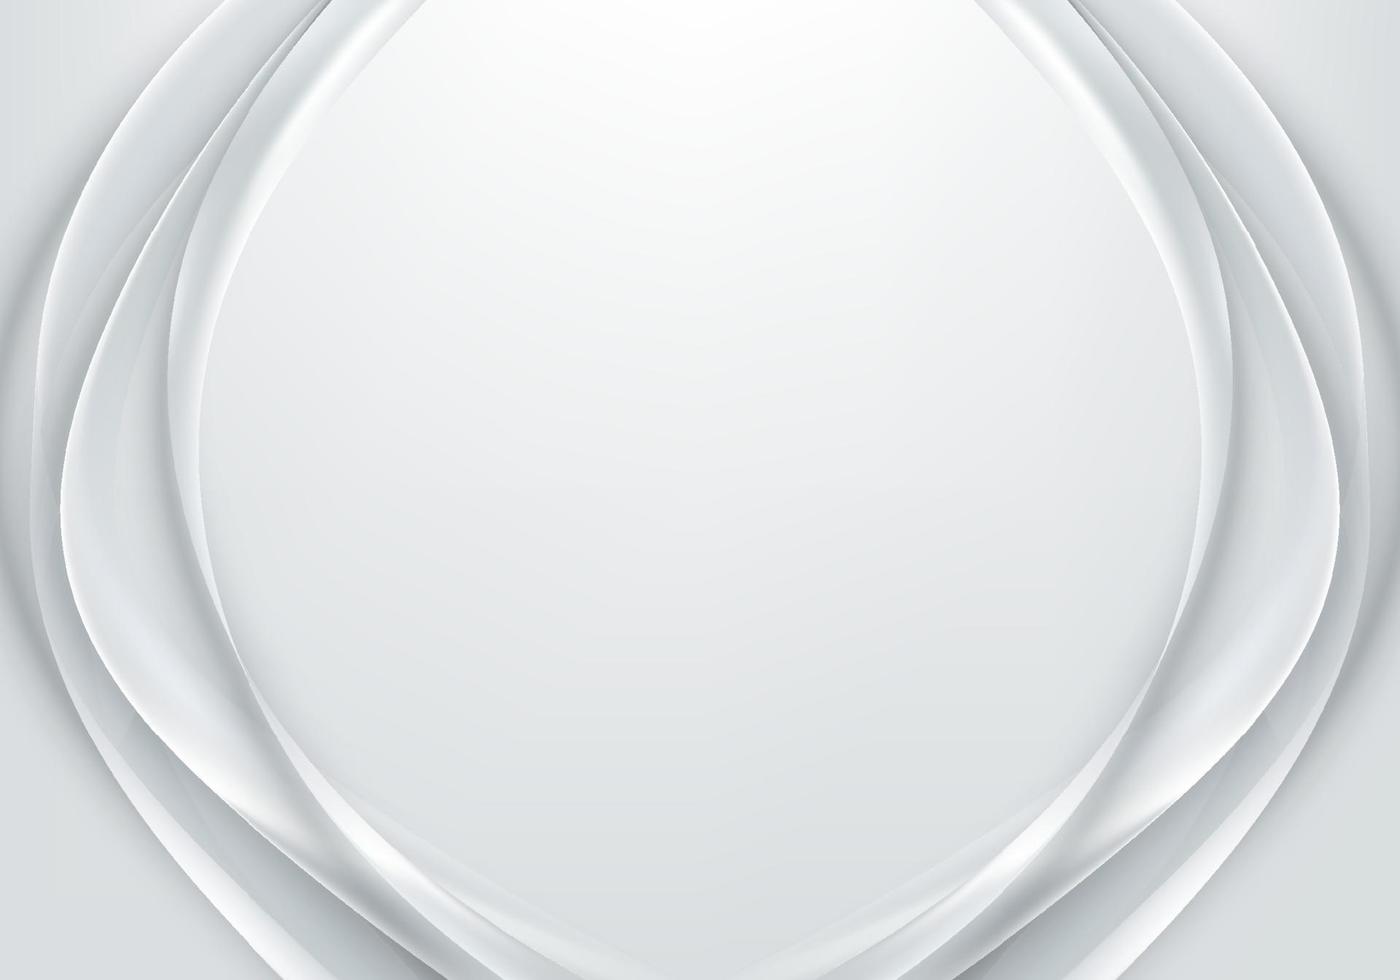 abstrakte weiße und graue Stoffsatin-Seide mit Schleifenlinie schöne weiche Hintergrundtextur Luxusstil vektor